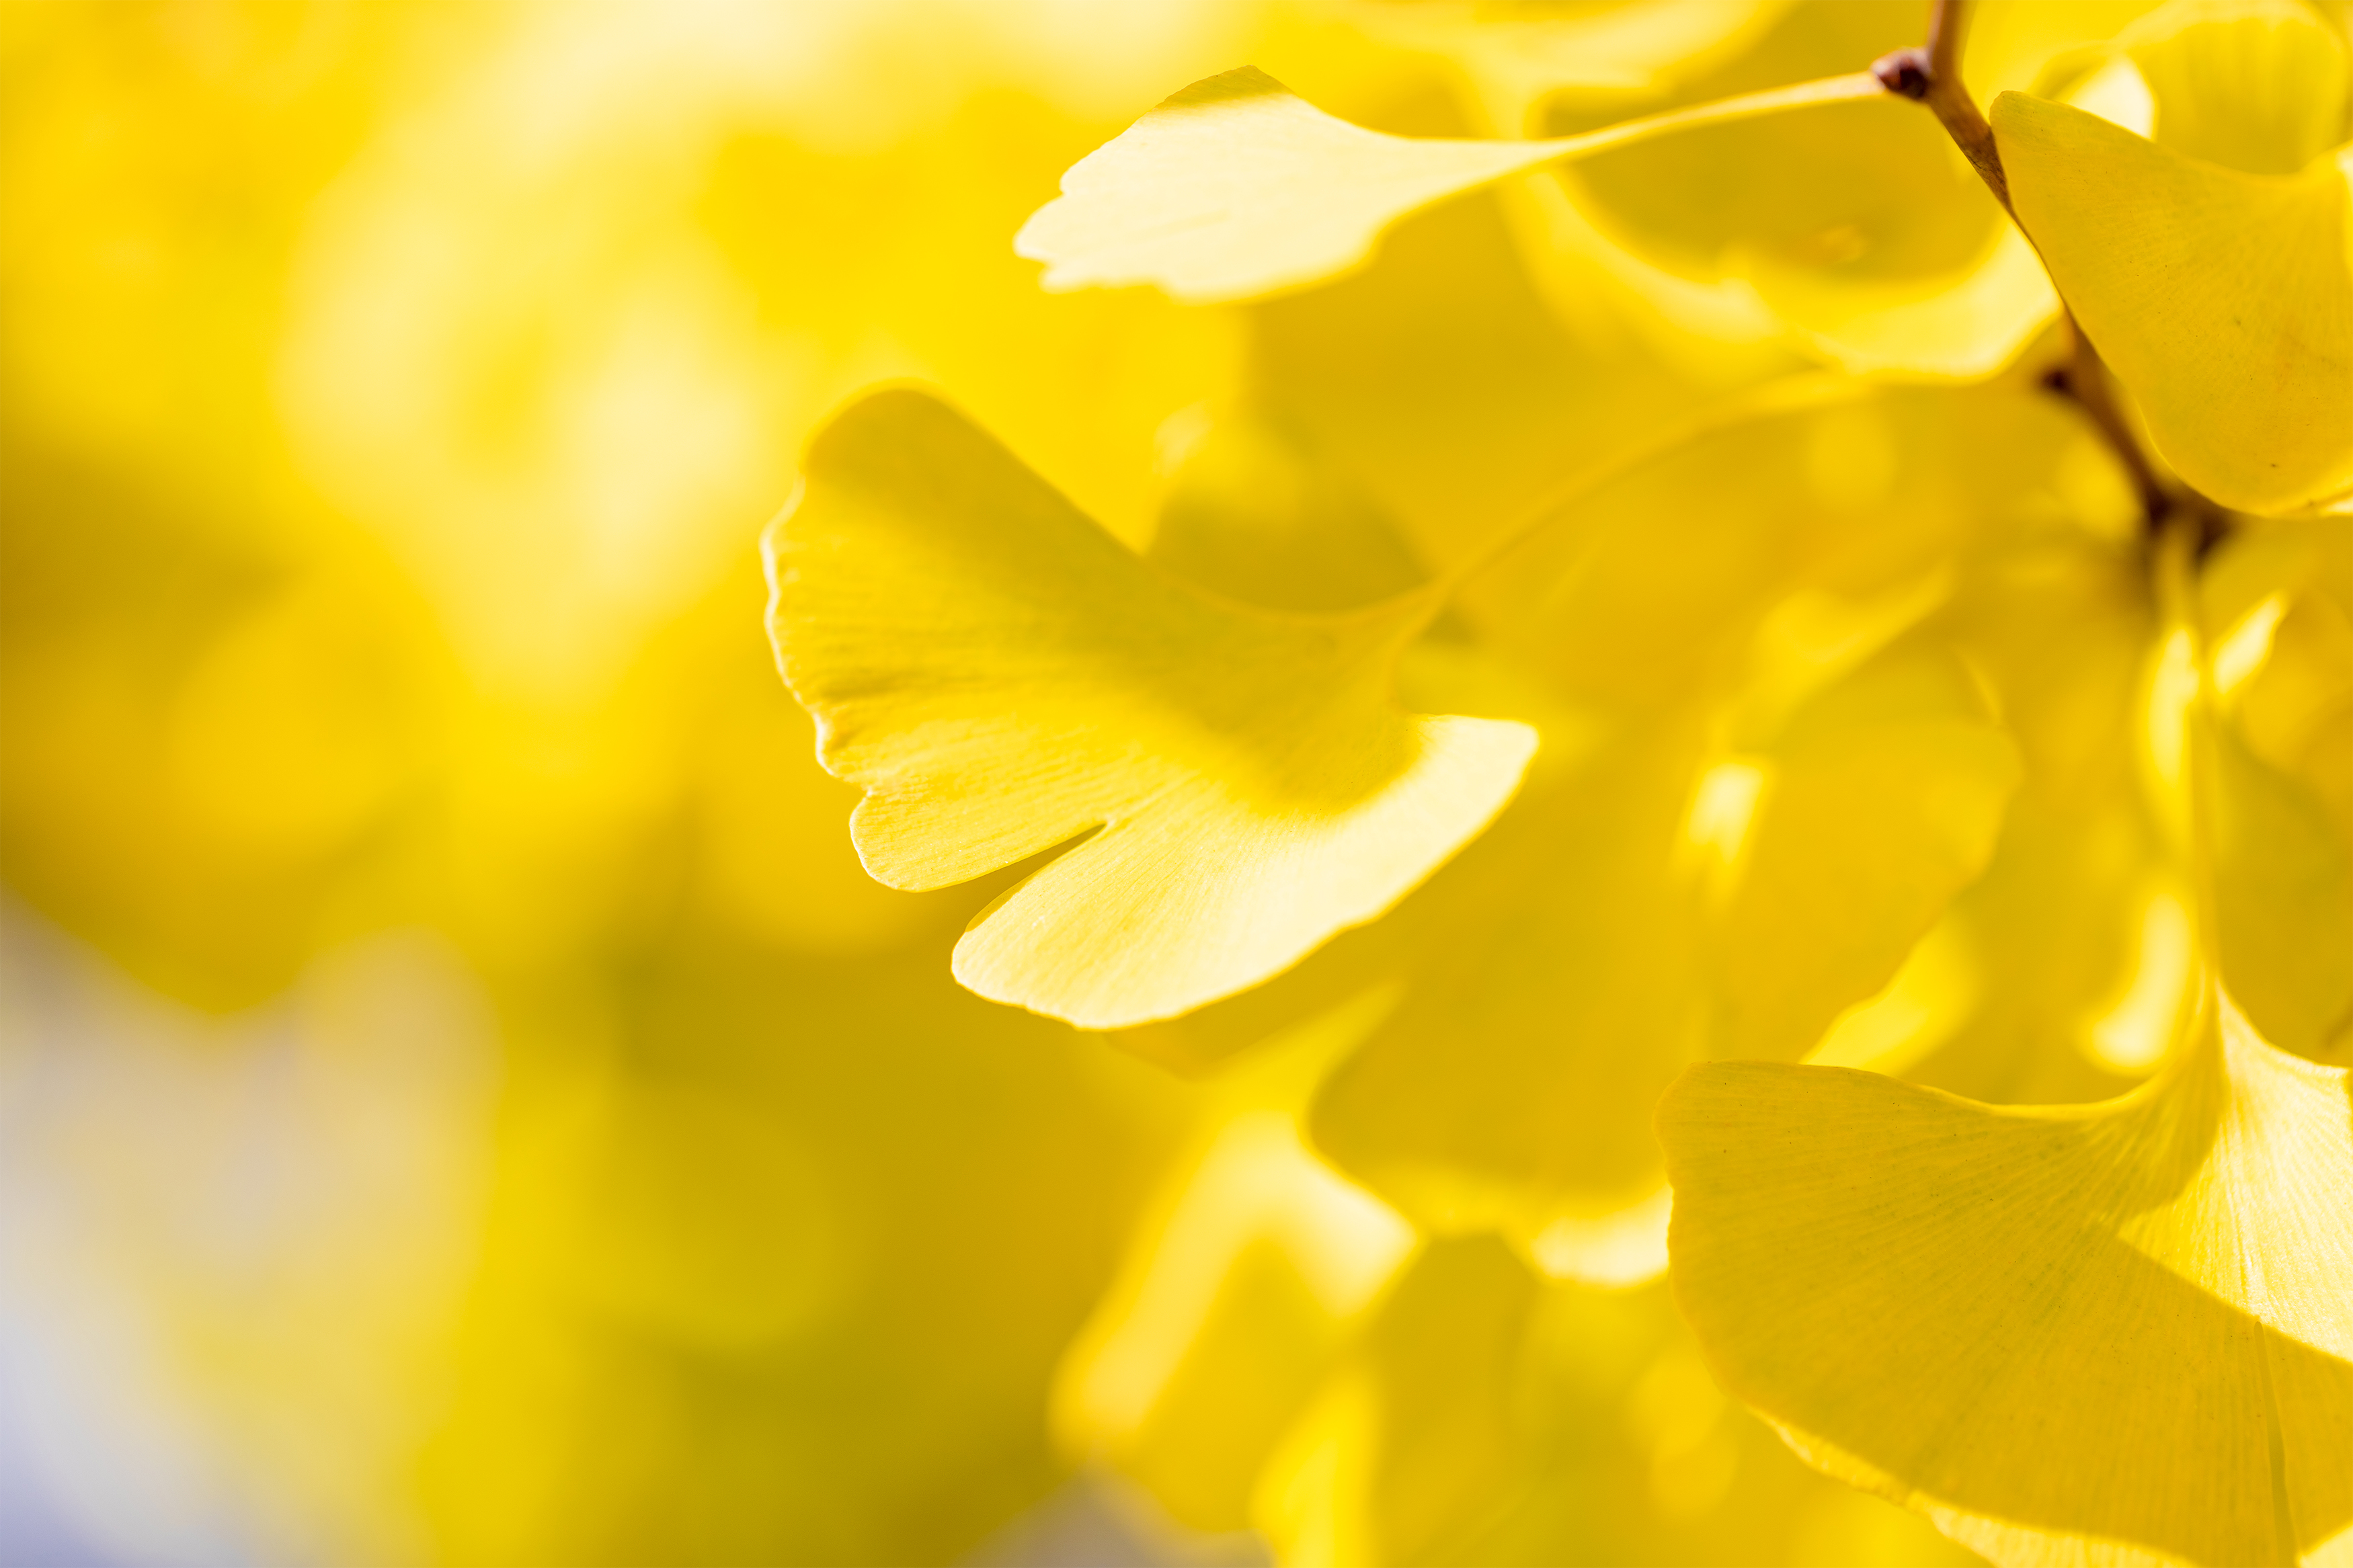 イチョウ 銀杏の葉 2 無料の高画質フリー写真素材 イメージズラボ